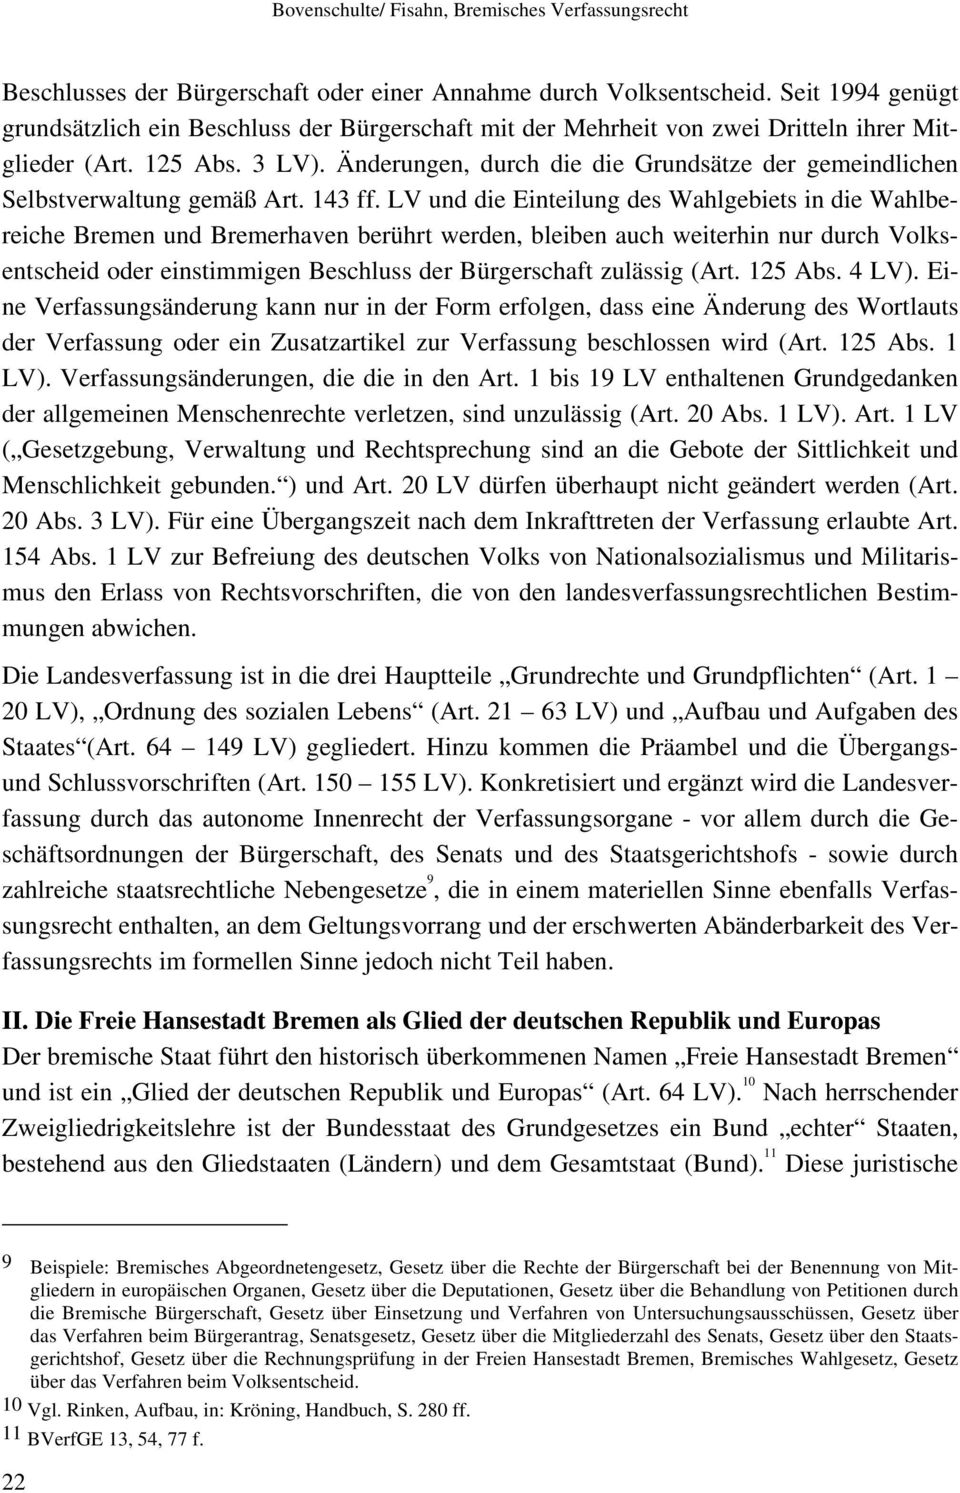 LV und die Einteilung des Wahlgebiets in die Wahlbereiche Bremen und Bremerhaven berührt werden, bleiben auch weiterhin nur durch Volksentscheid oder einstimmigen Beschluss der Bürgerschaft zulässig